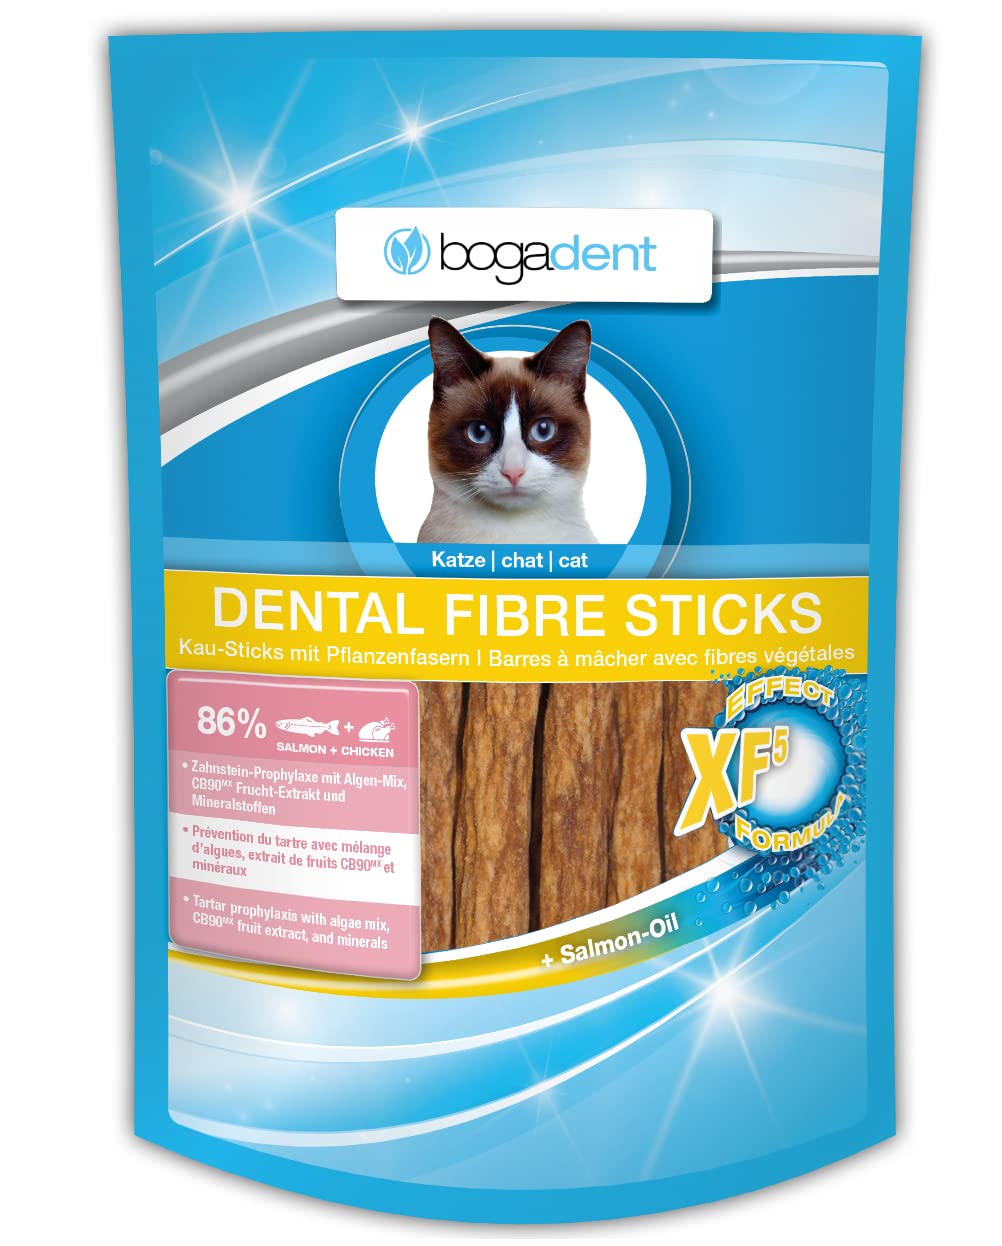 Bogadent Dental Fiber Sticks Salmon Cat, 50 g 50 g (pack of 1) - PawsPlanet Australia